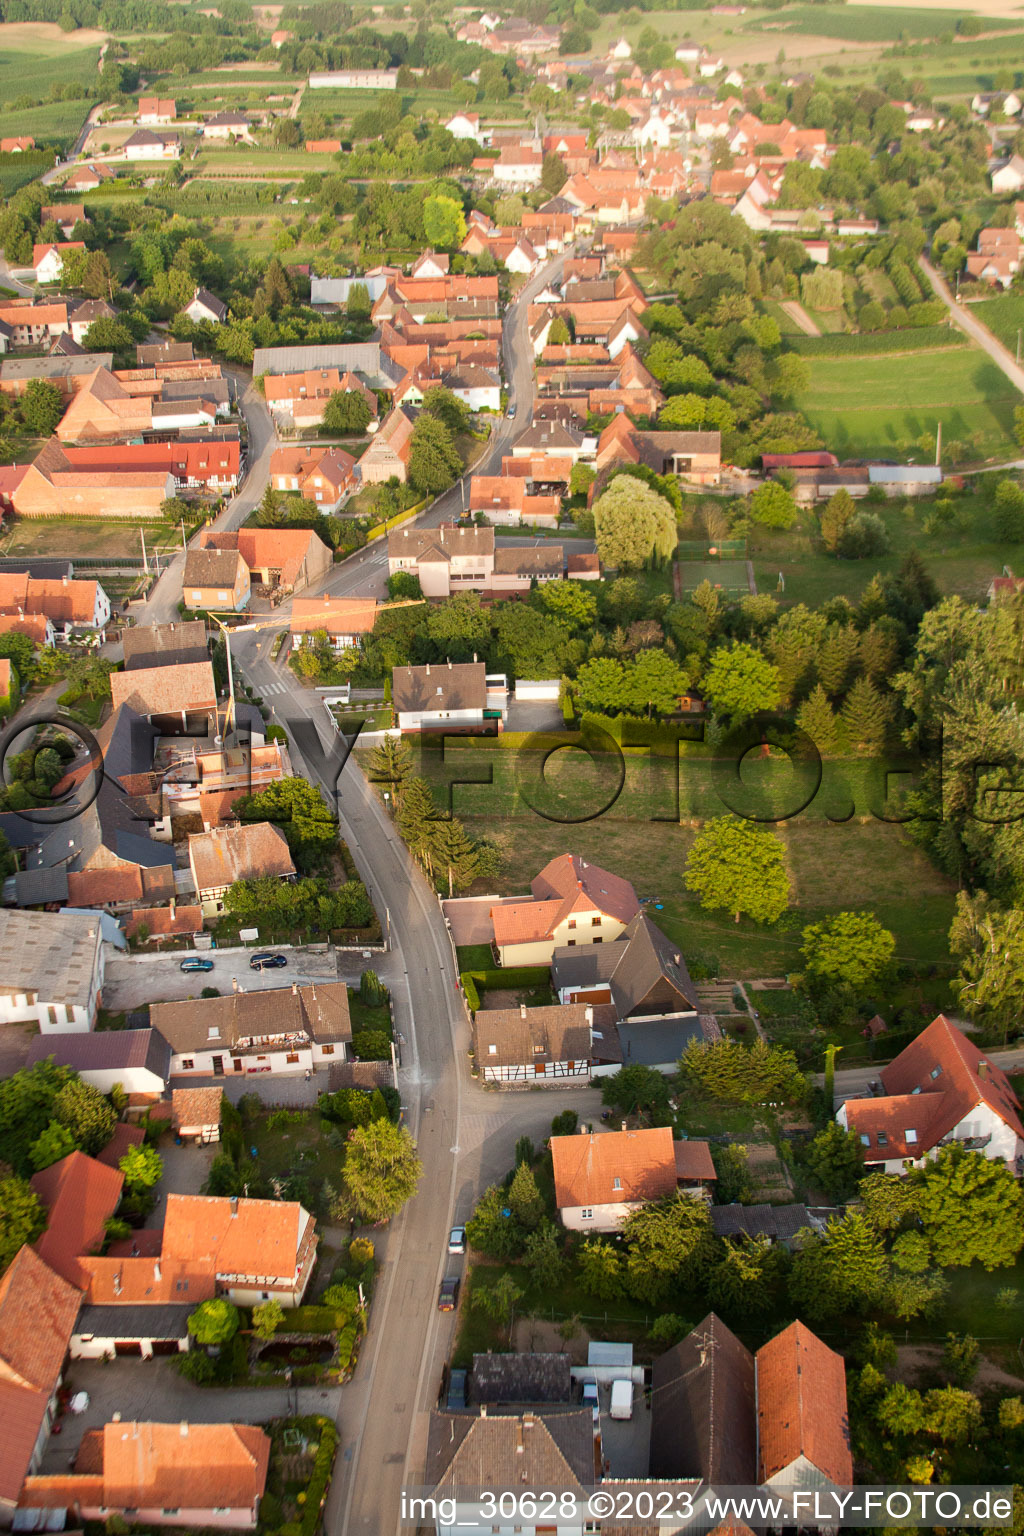 Wintzenbach im Bundesland Bas-Rhin, Frankreich von einer Drohne aus